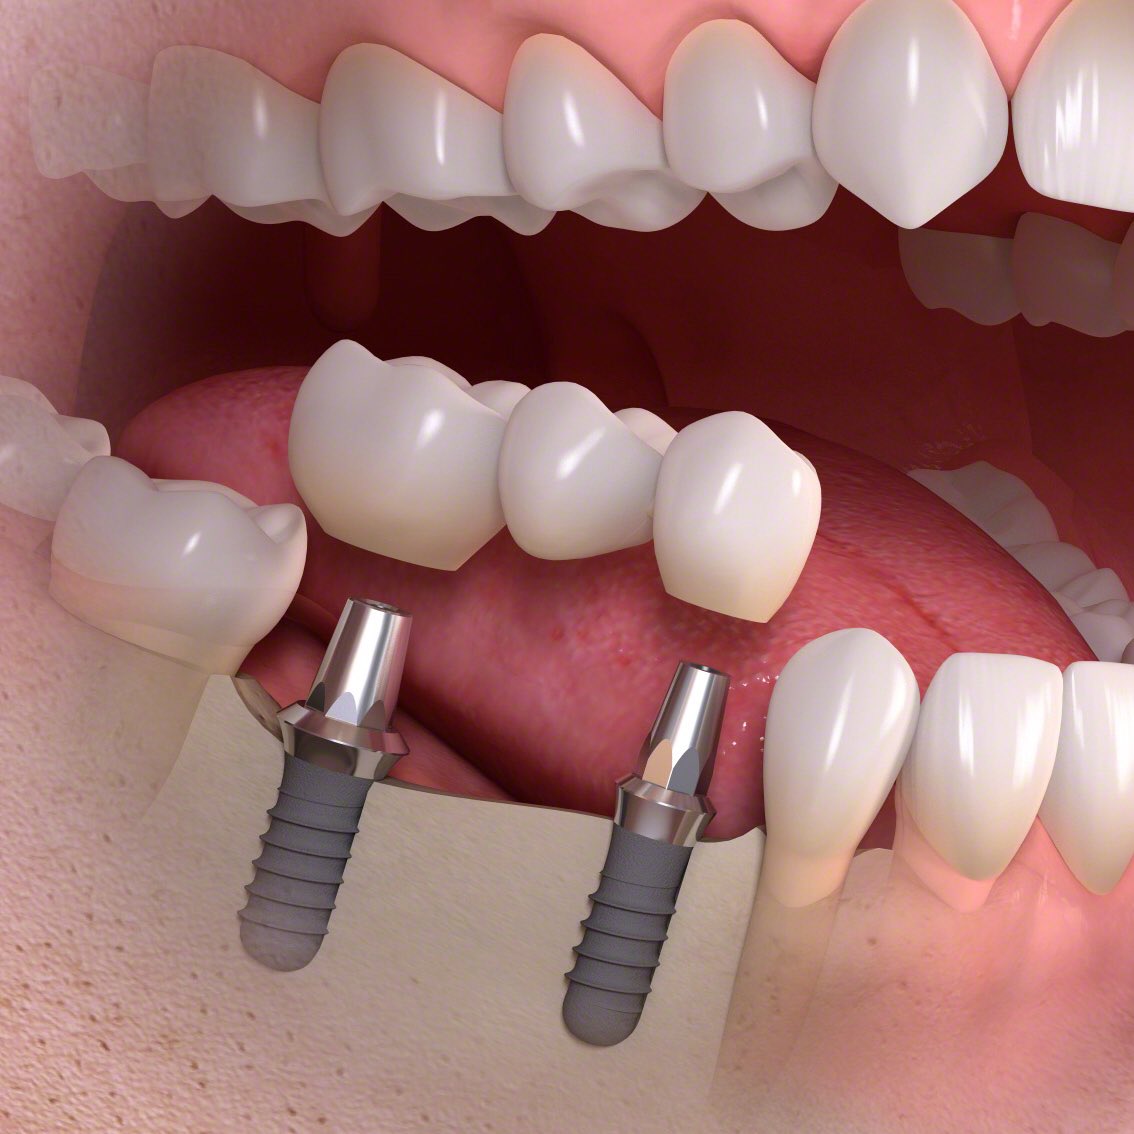 клиника протезирования зубов